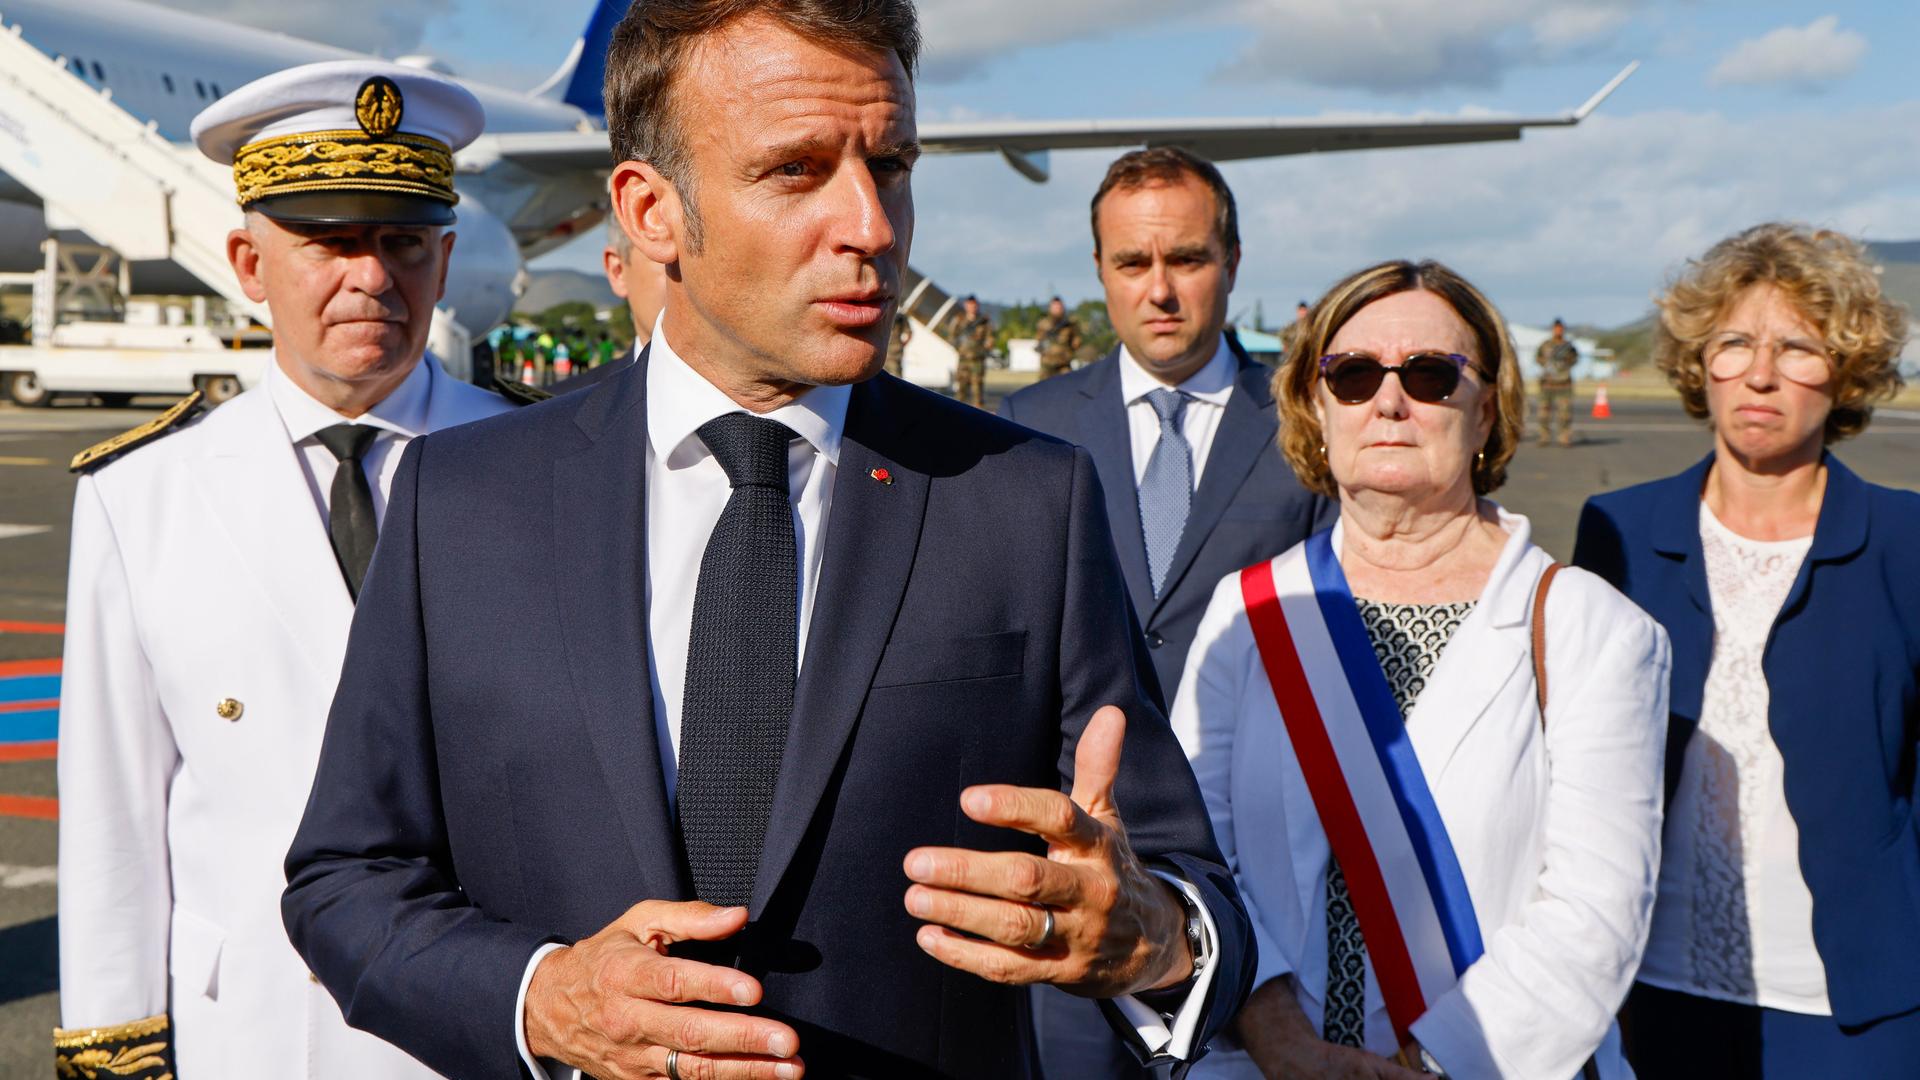 Frankreichs Präsident Macron steht auf einem Flugfeld, redet und gestikuliert. Um ihn herum stehen mehrere andere Menschen.